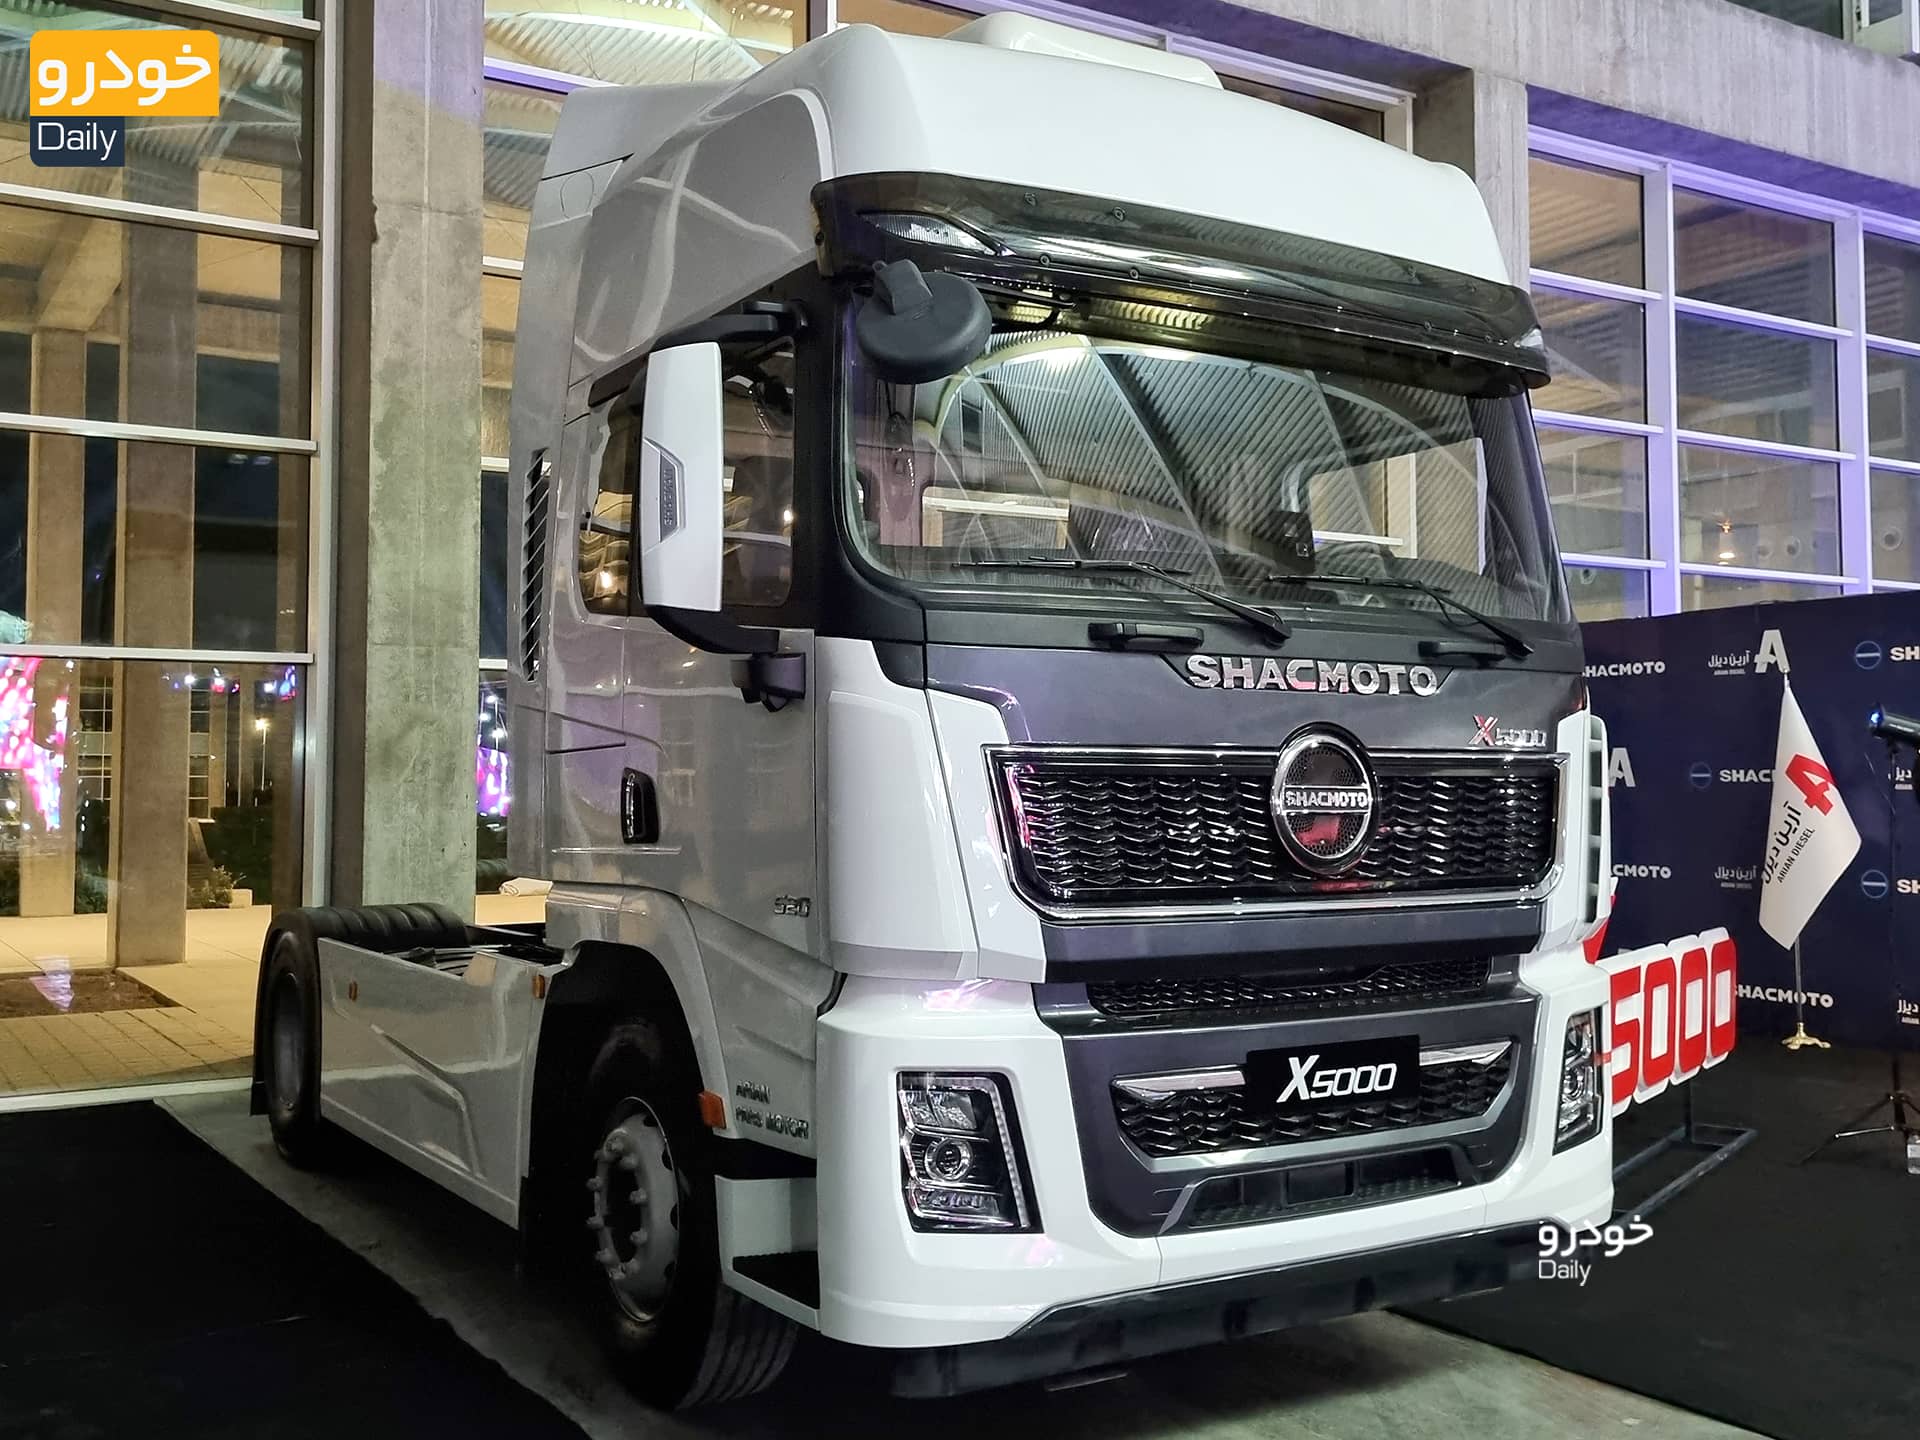 کامیون کشنده شکموتو X5000 شرکت آرین دیزل - رُشد ۷۲ درصدی تولید آرین دیزل در شش ماهه نخست ۱۴۰۲